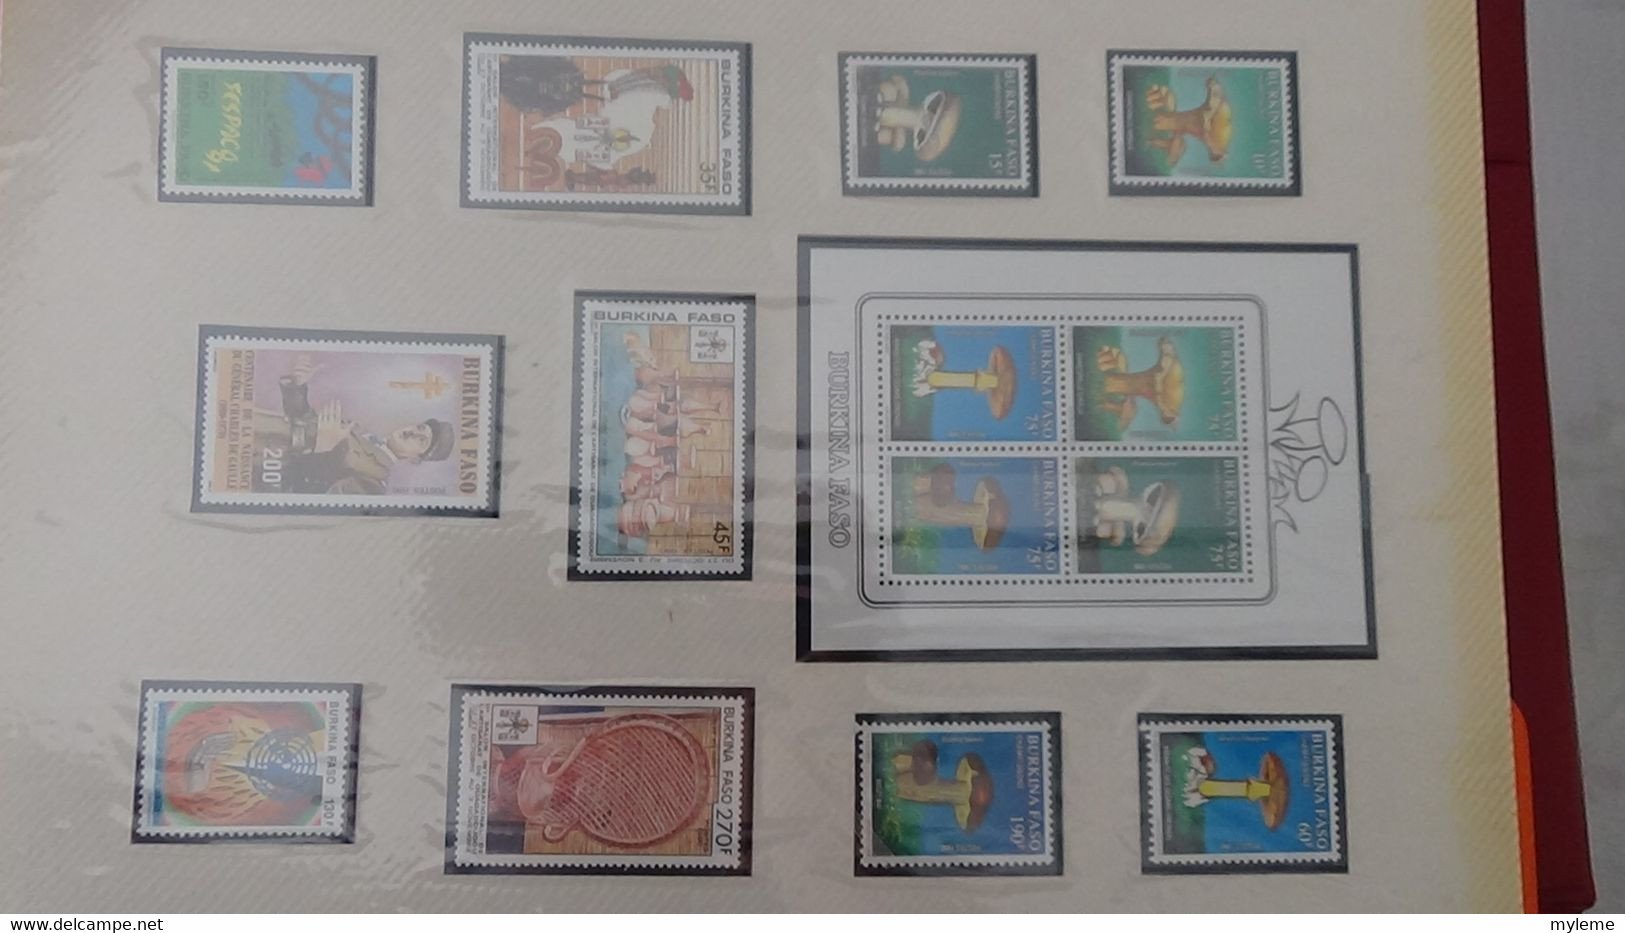 L21 Très belle collection Afrique dont Benin, Cameroun, Centrafrique et Comores en timbres et blocs ** A saisir !!!